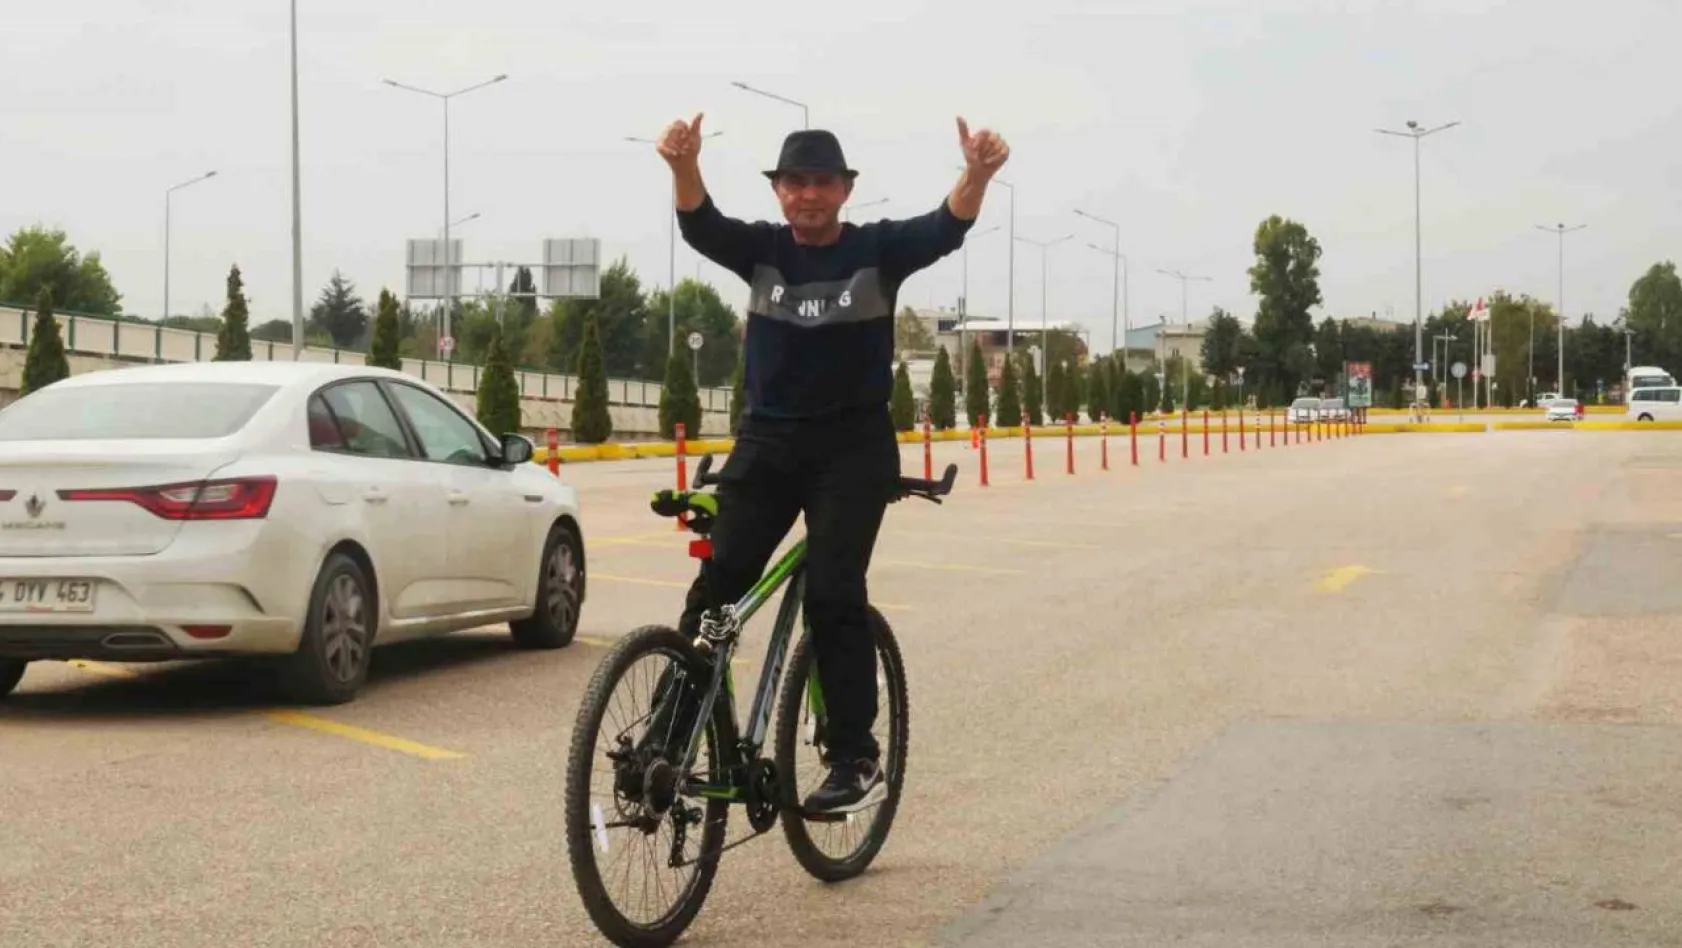 (Özel) Bisiklete ters binen adam konuştu: 'Nasrettin Hoca'dan ilham aldım'